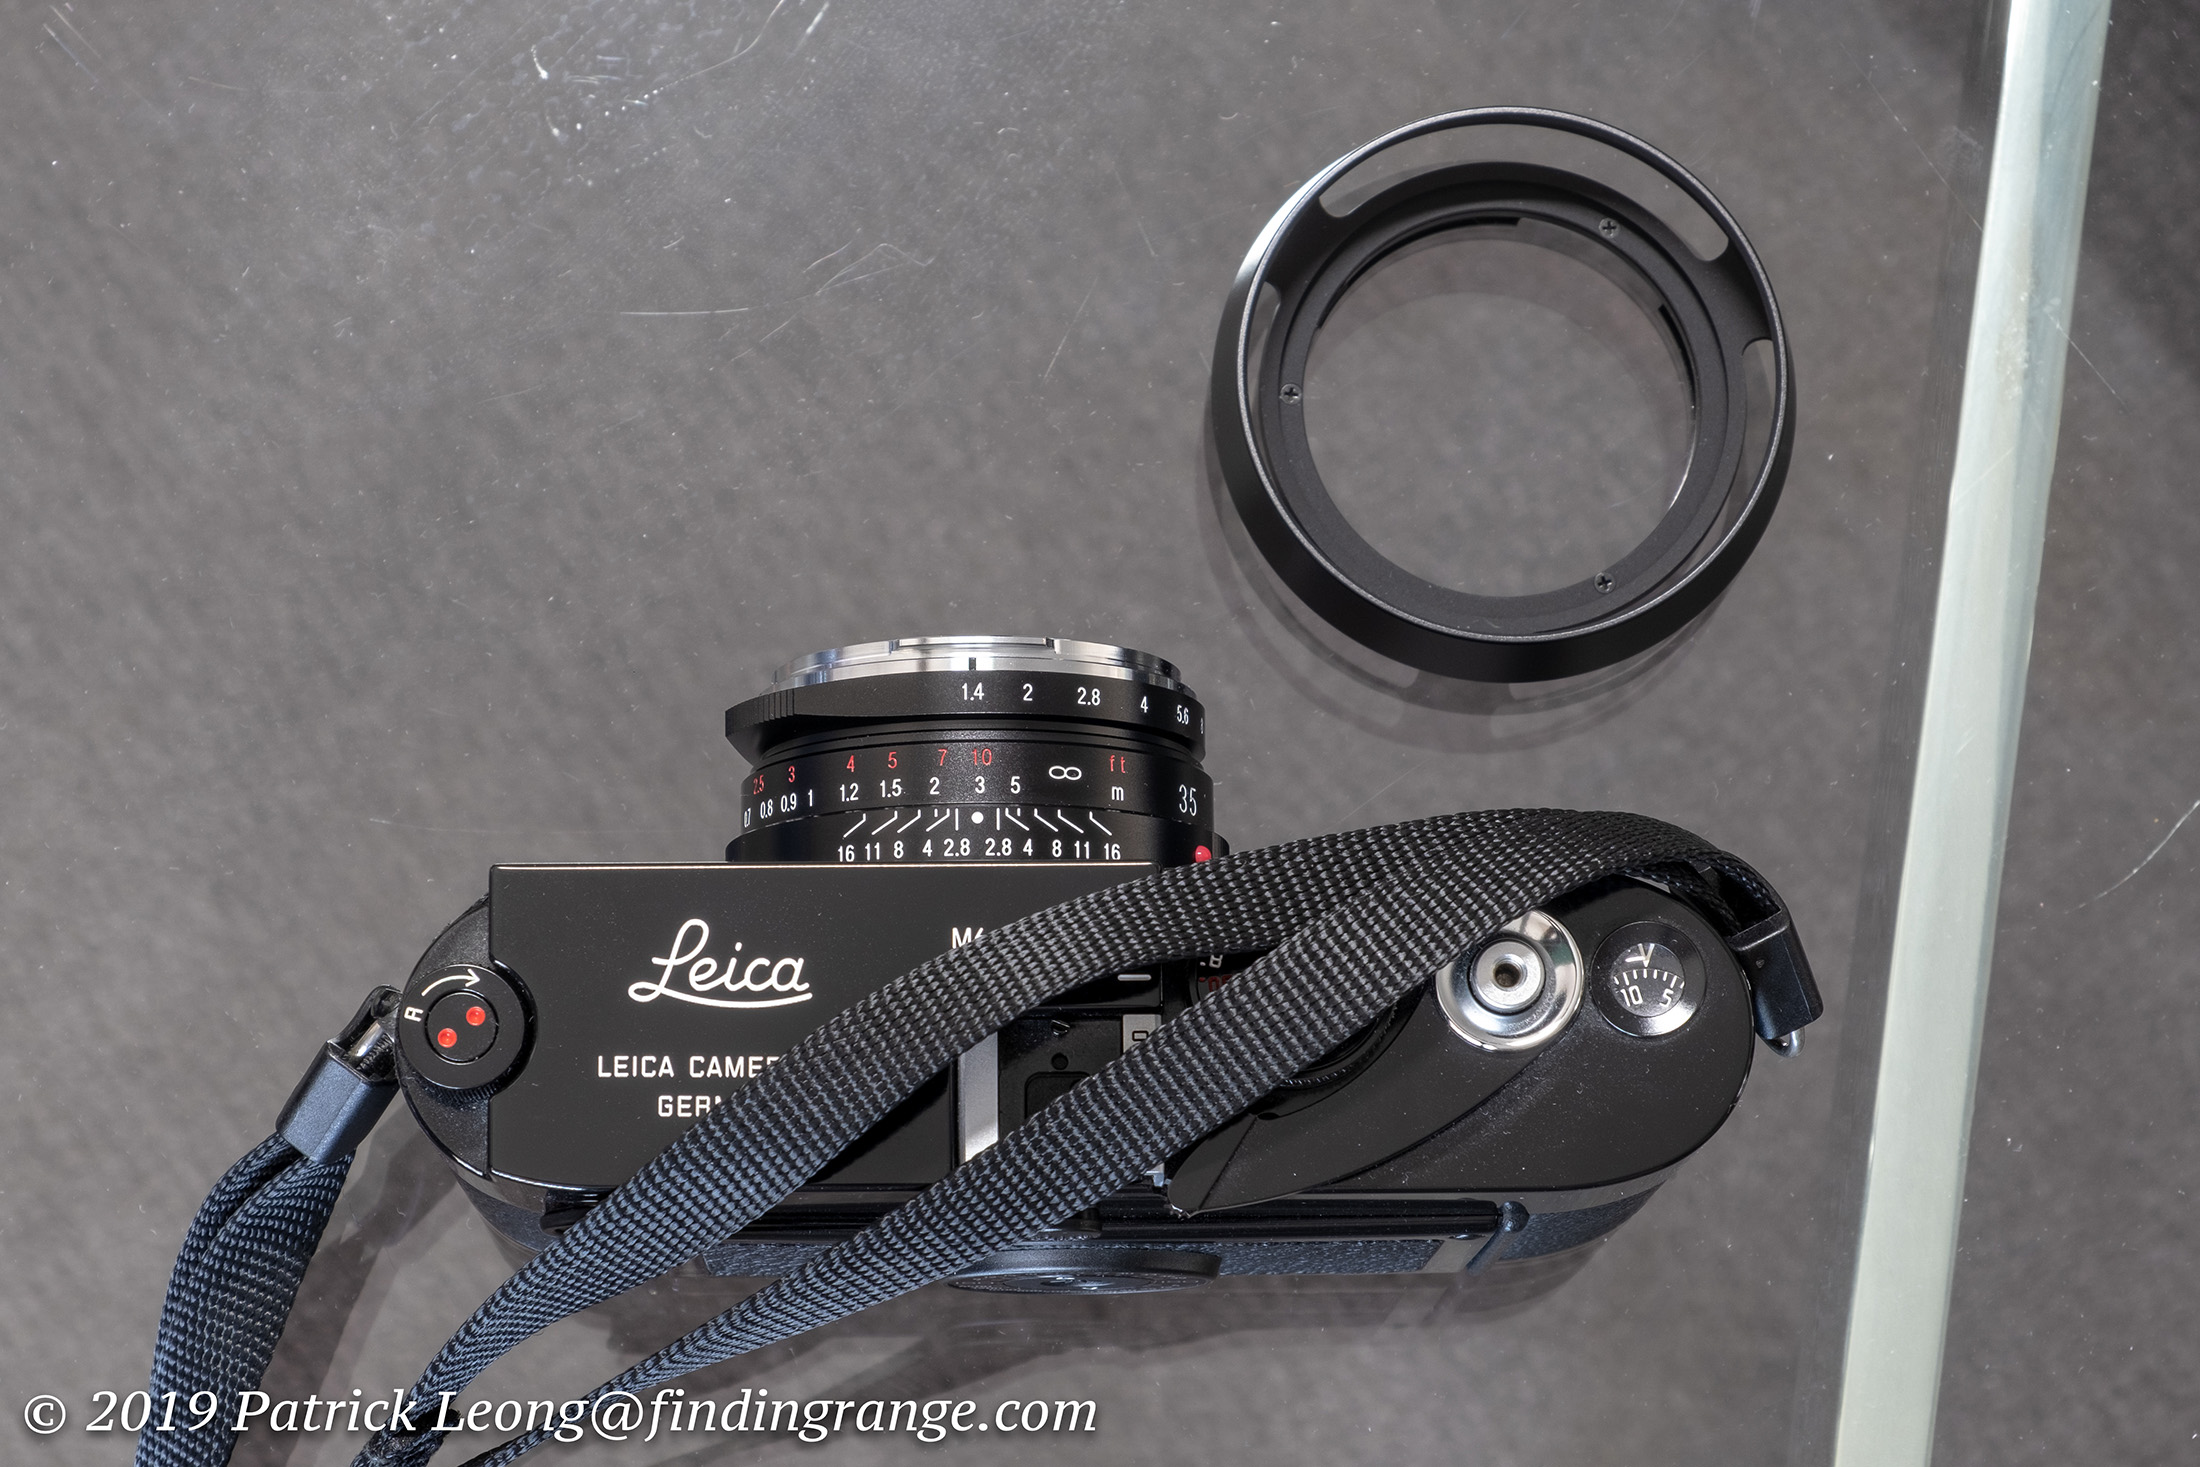 Voigtlander Nokton Classic 35mm f1.4 II MC Lens Review